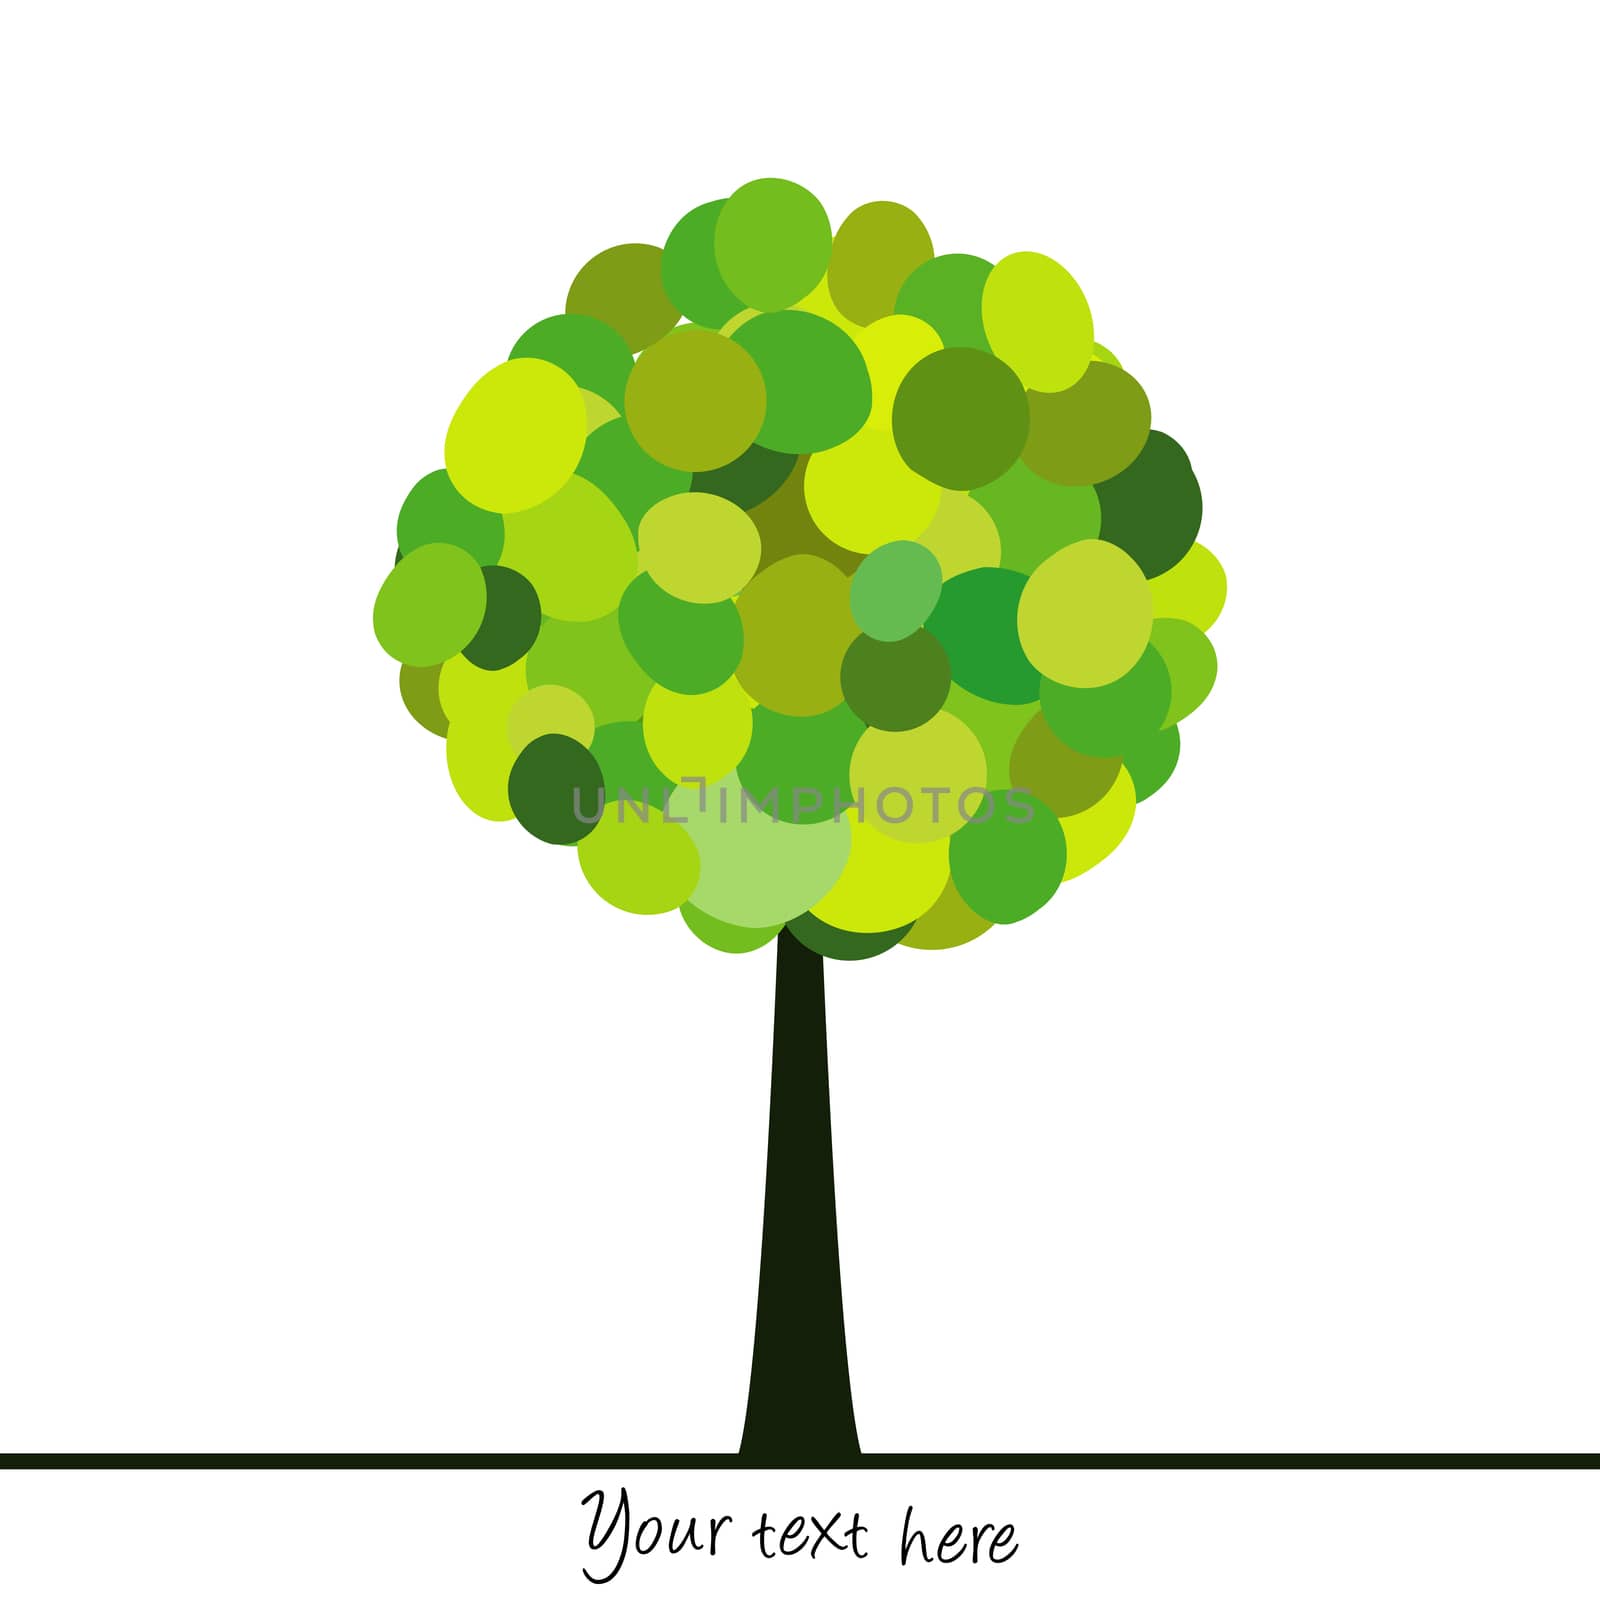 Abstract tree made of green circles by hibrida13